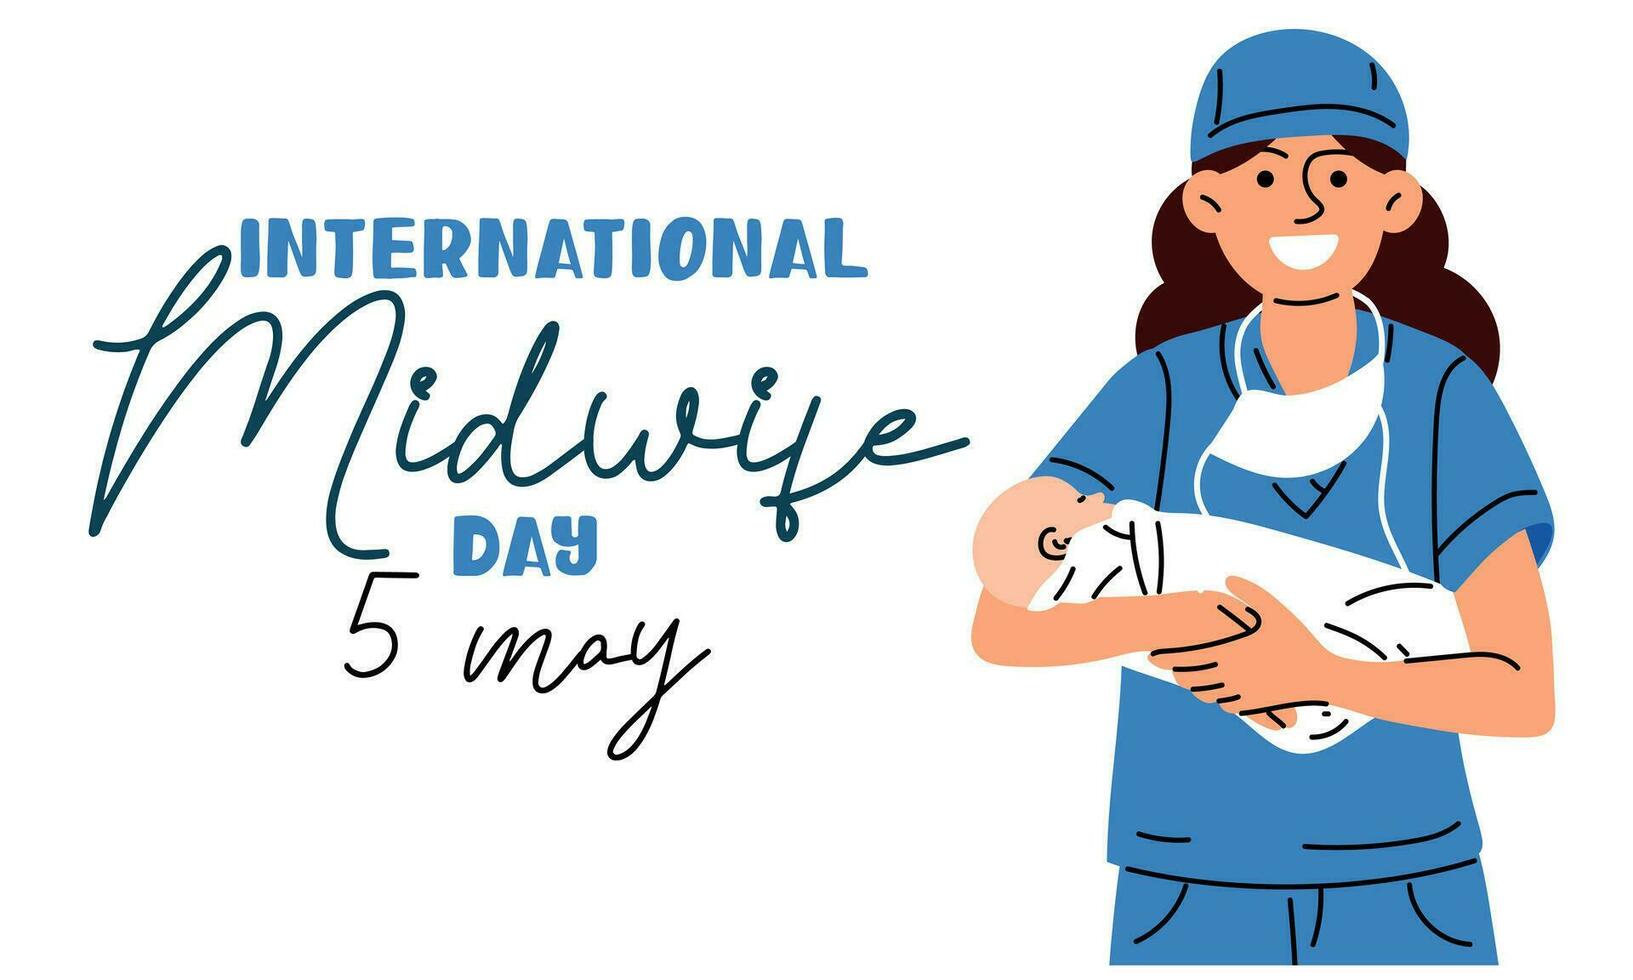 Internationale dag van verloskundigen is gevierd jaarlijks Aan mei 5. verloskundige, een medisch professioneel wie geeft voor moeders en pasgeborenen gedurende bevalling. de verloskundige glimlacht en houdt de pasgeboren. vector